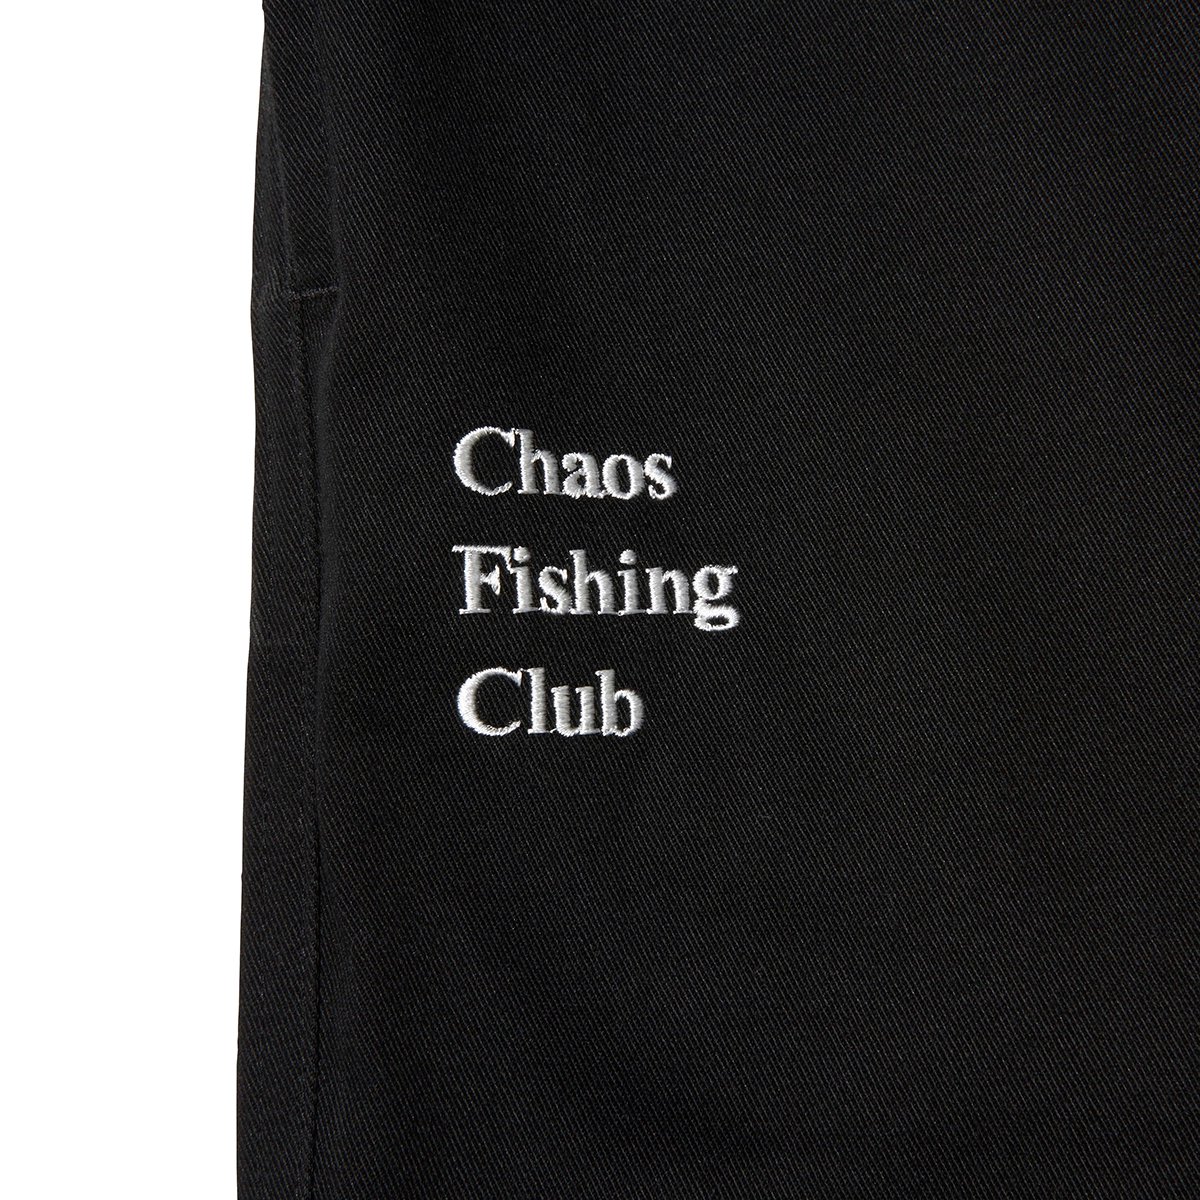 Chaos Fishing Club - LOGO 921 PANTS - Black - SHRED